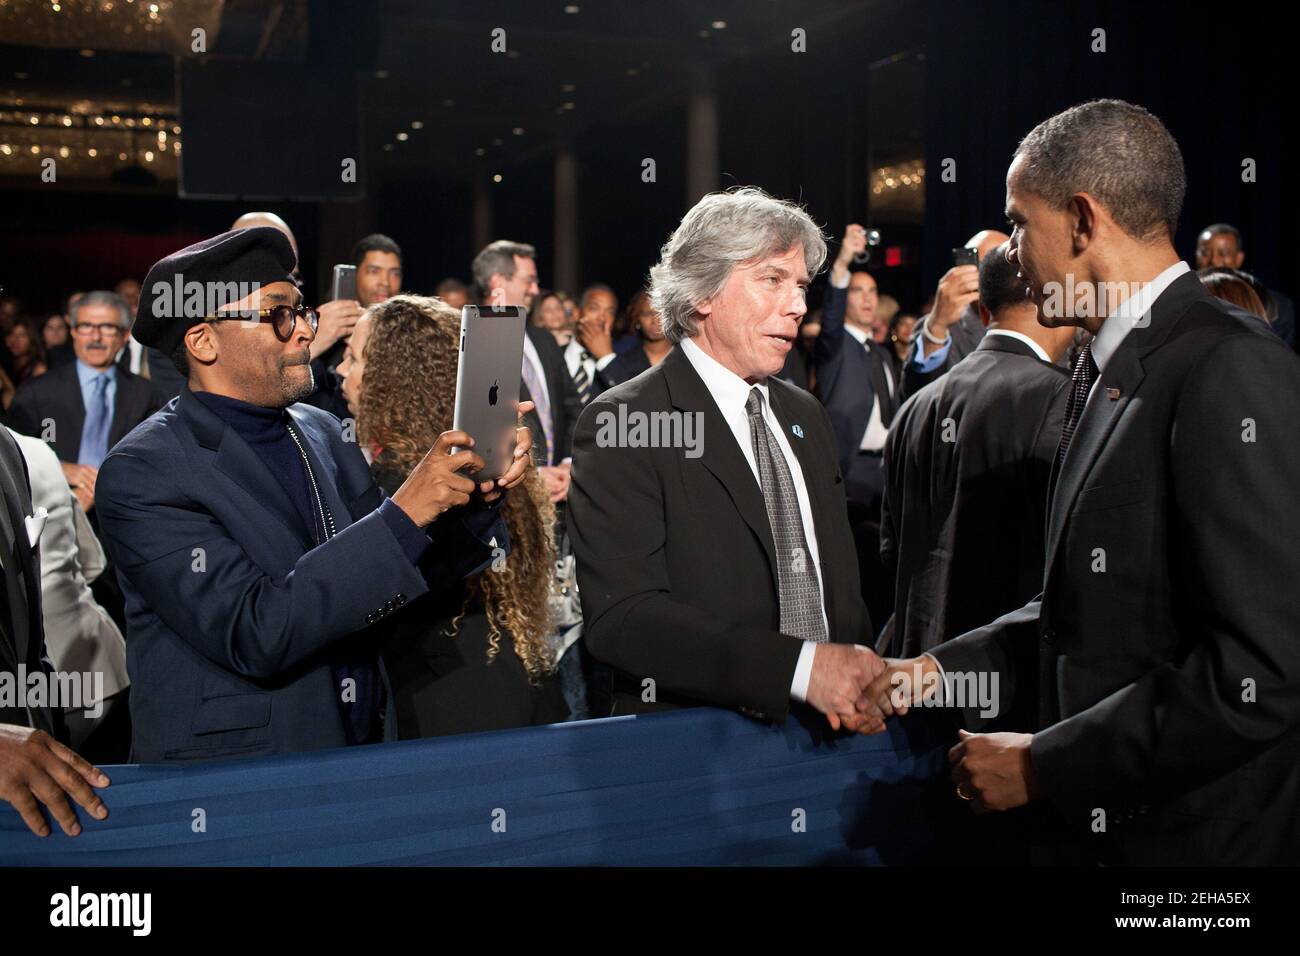 Le cinéaste Spike Lee utilise son iPad pour photographier le président Barack Obama alors qu'il accueille les invités du gala des prix Keepers of the Dream du réseau national d'action à New York, New York, le 6 avril 2011. Banque D'Images